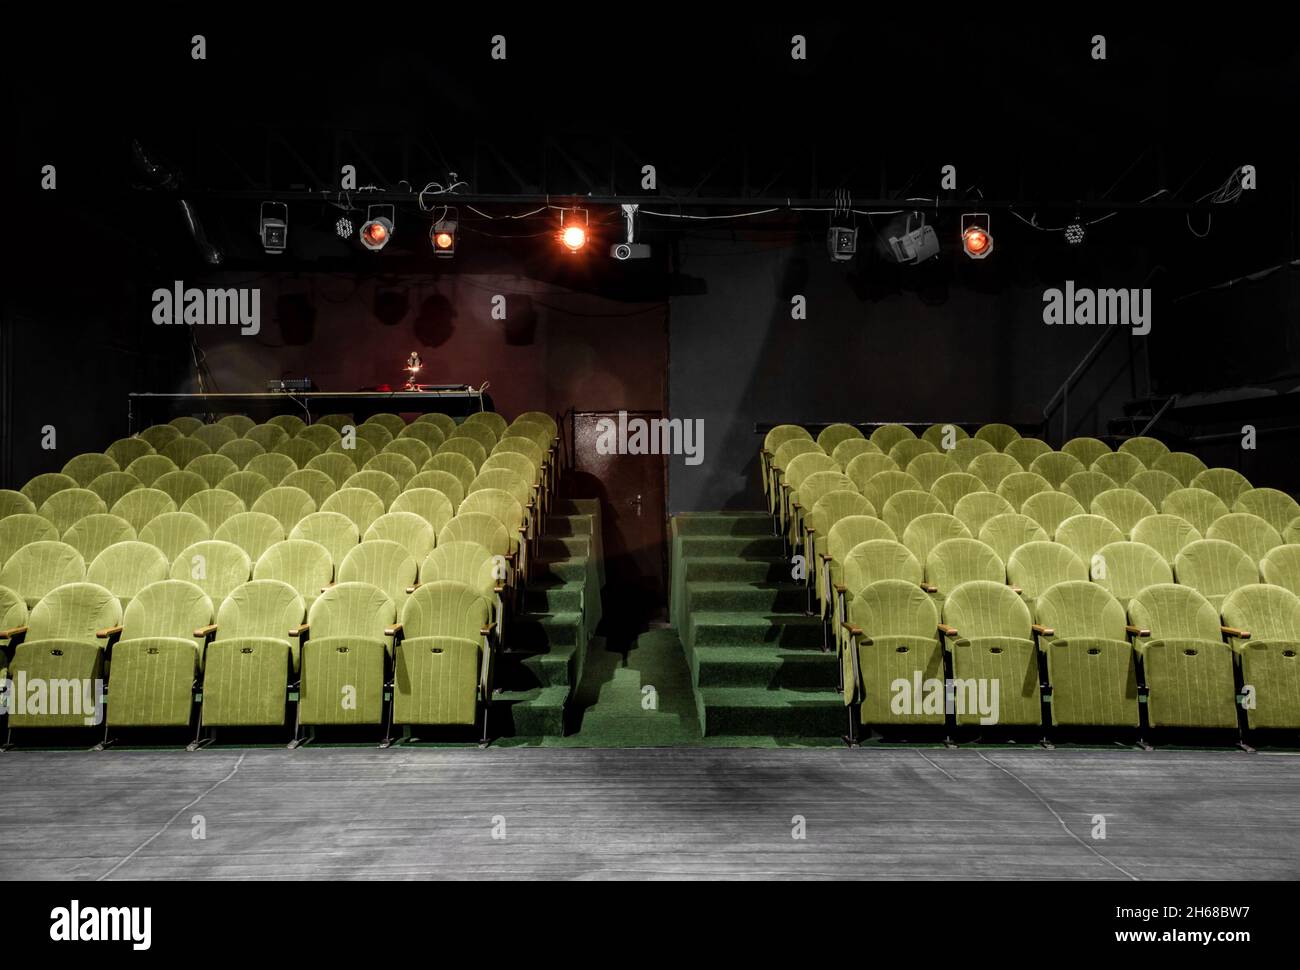 mage di un piccolo auditorium con poltrone verdi Foto Stock